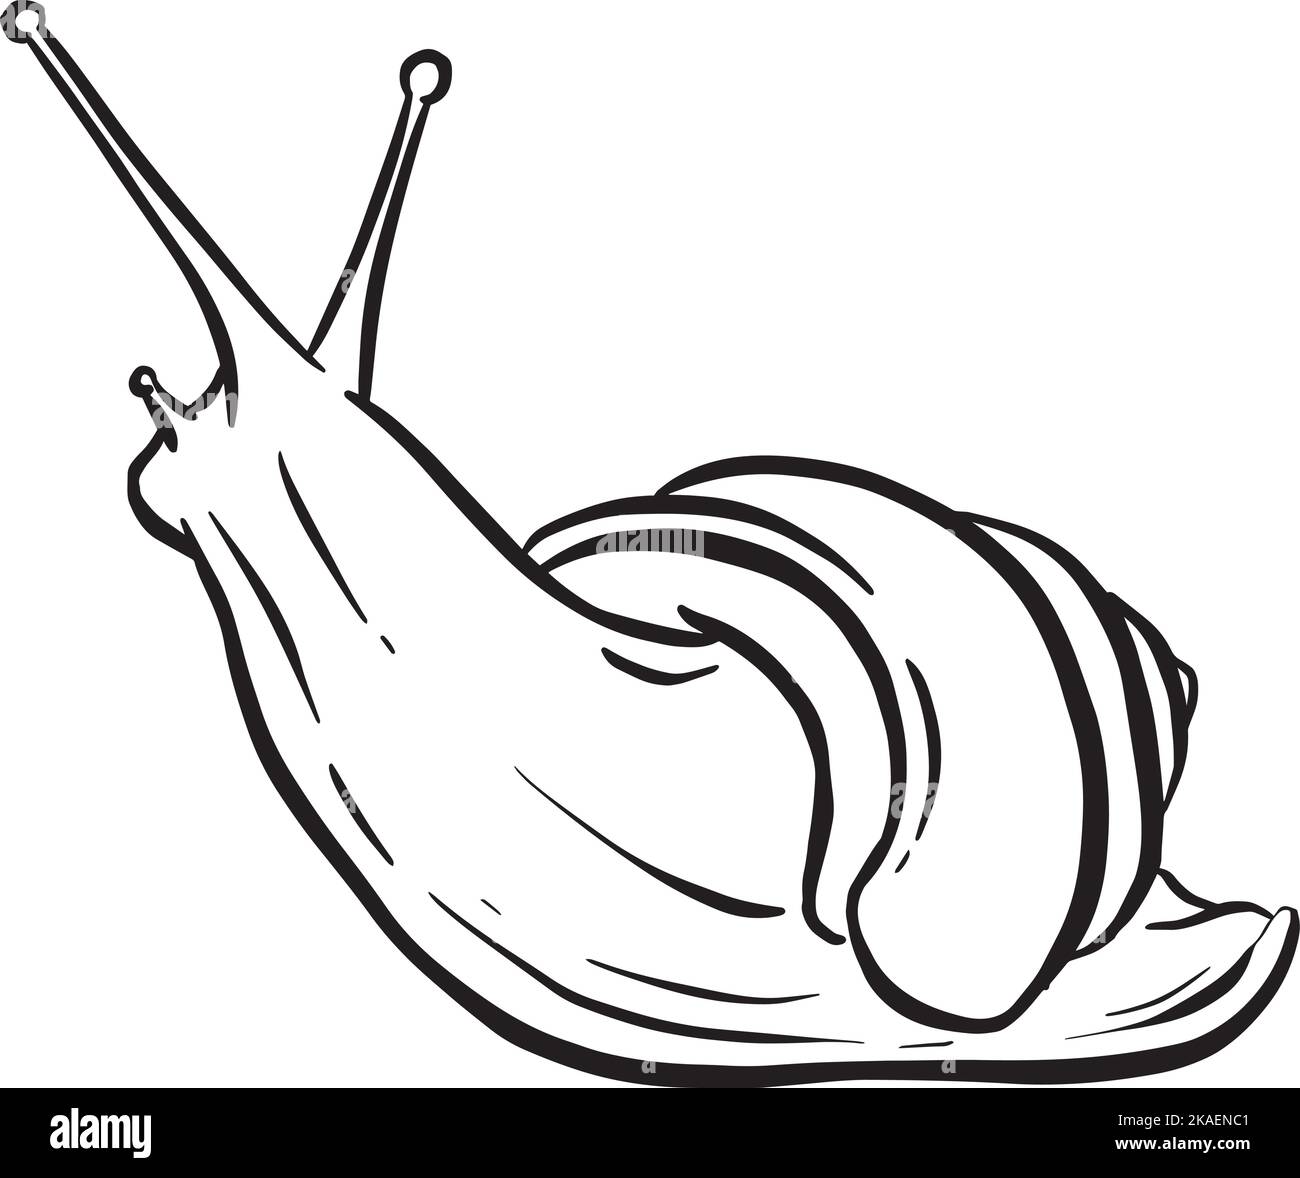 Dessin au trait Contour d'un escargot de jardin avec coque pour logo ou motif mascotte dans l'illustration vectorielle Illustration de Vecteur